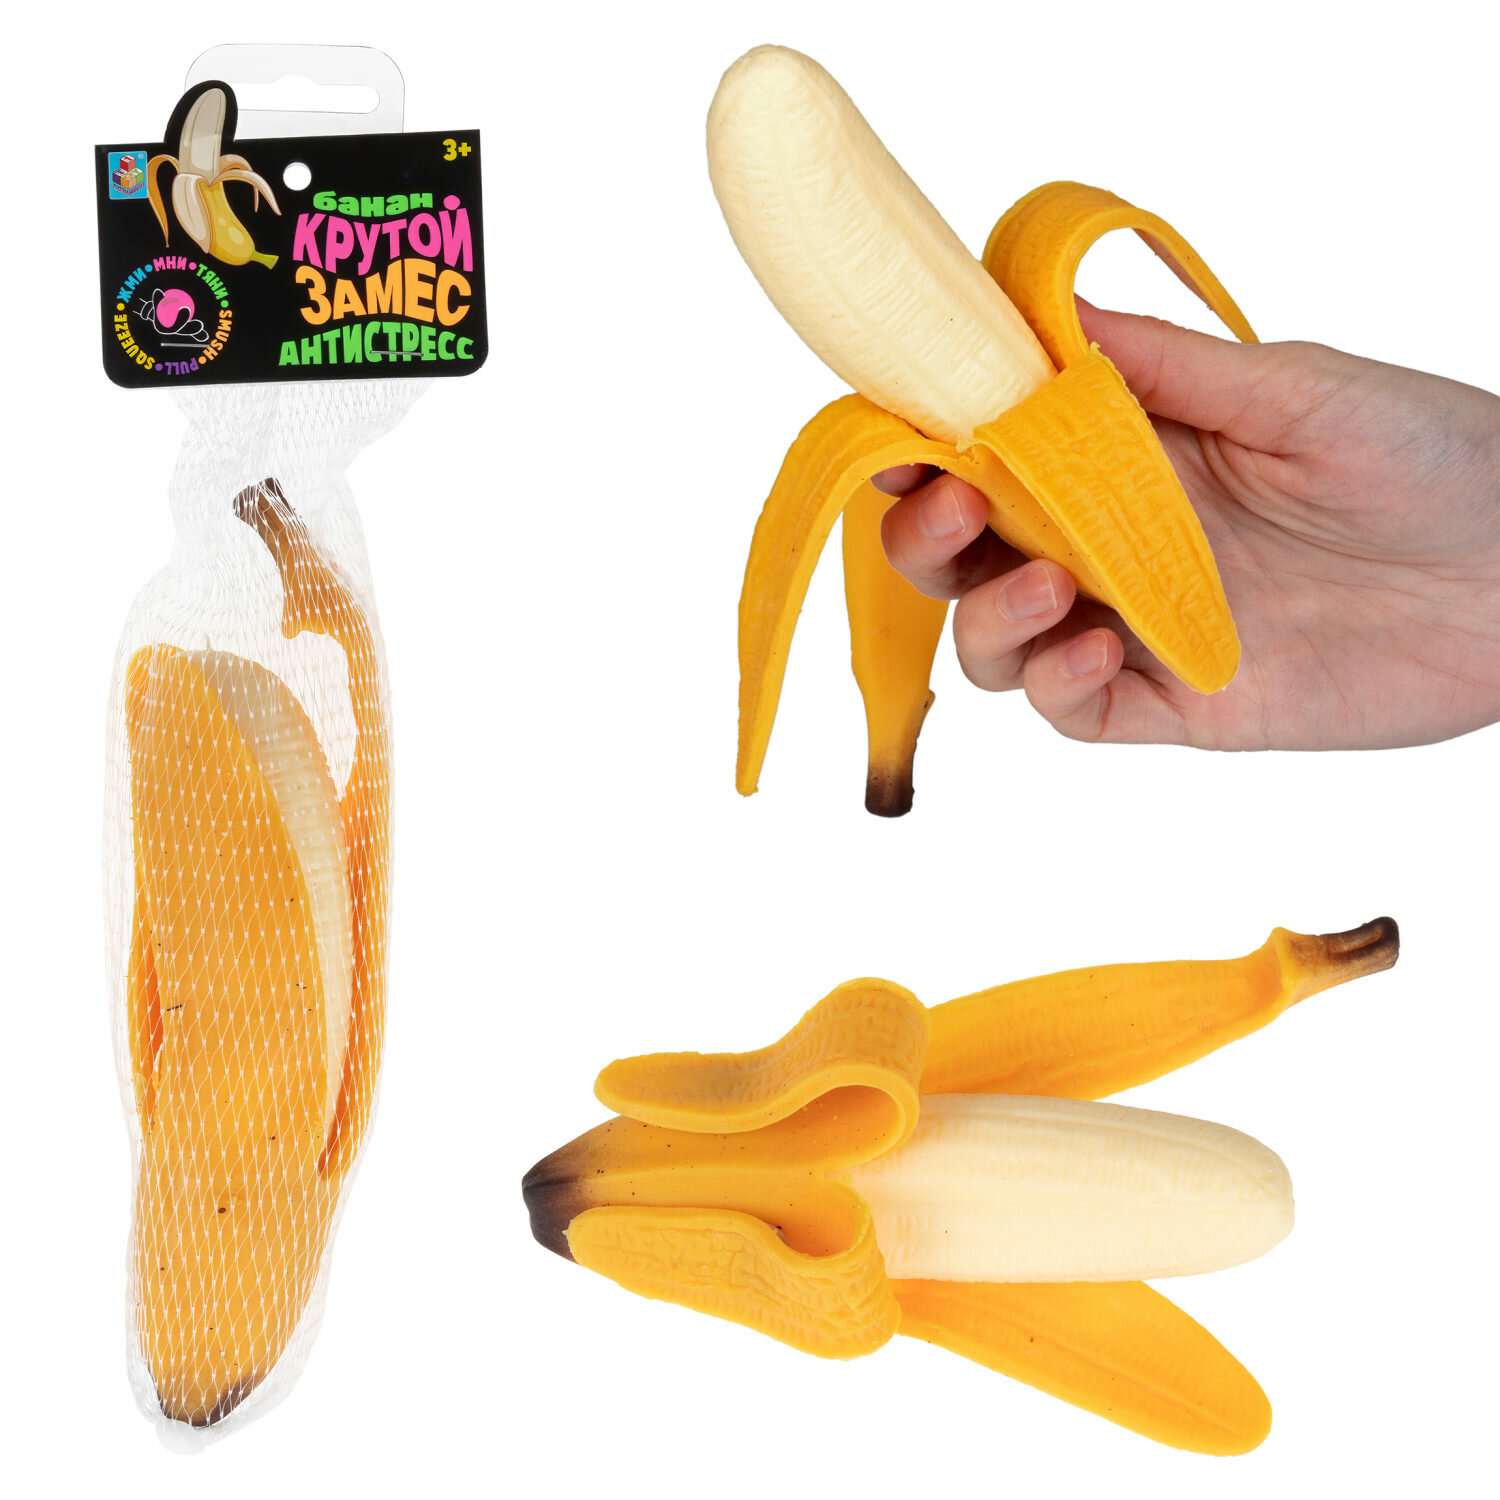 Игрушка-антистресс 1toy Крутой замес очищенный банан 17*5*4см сетка с хедером